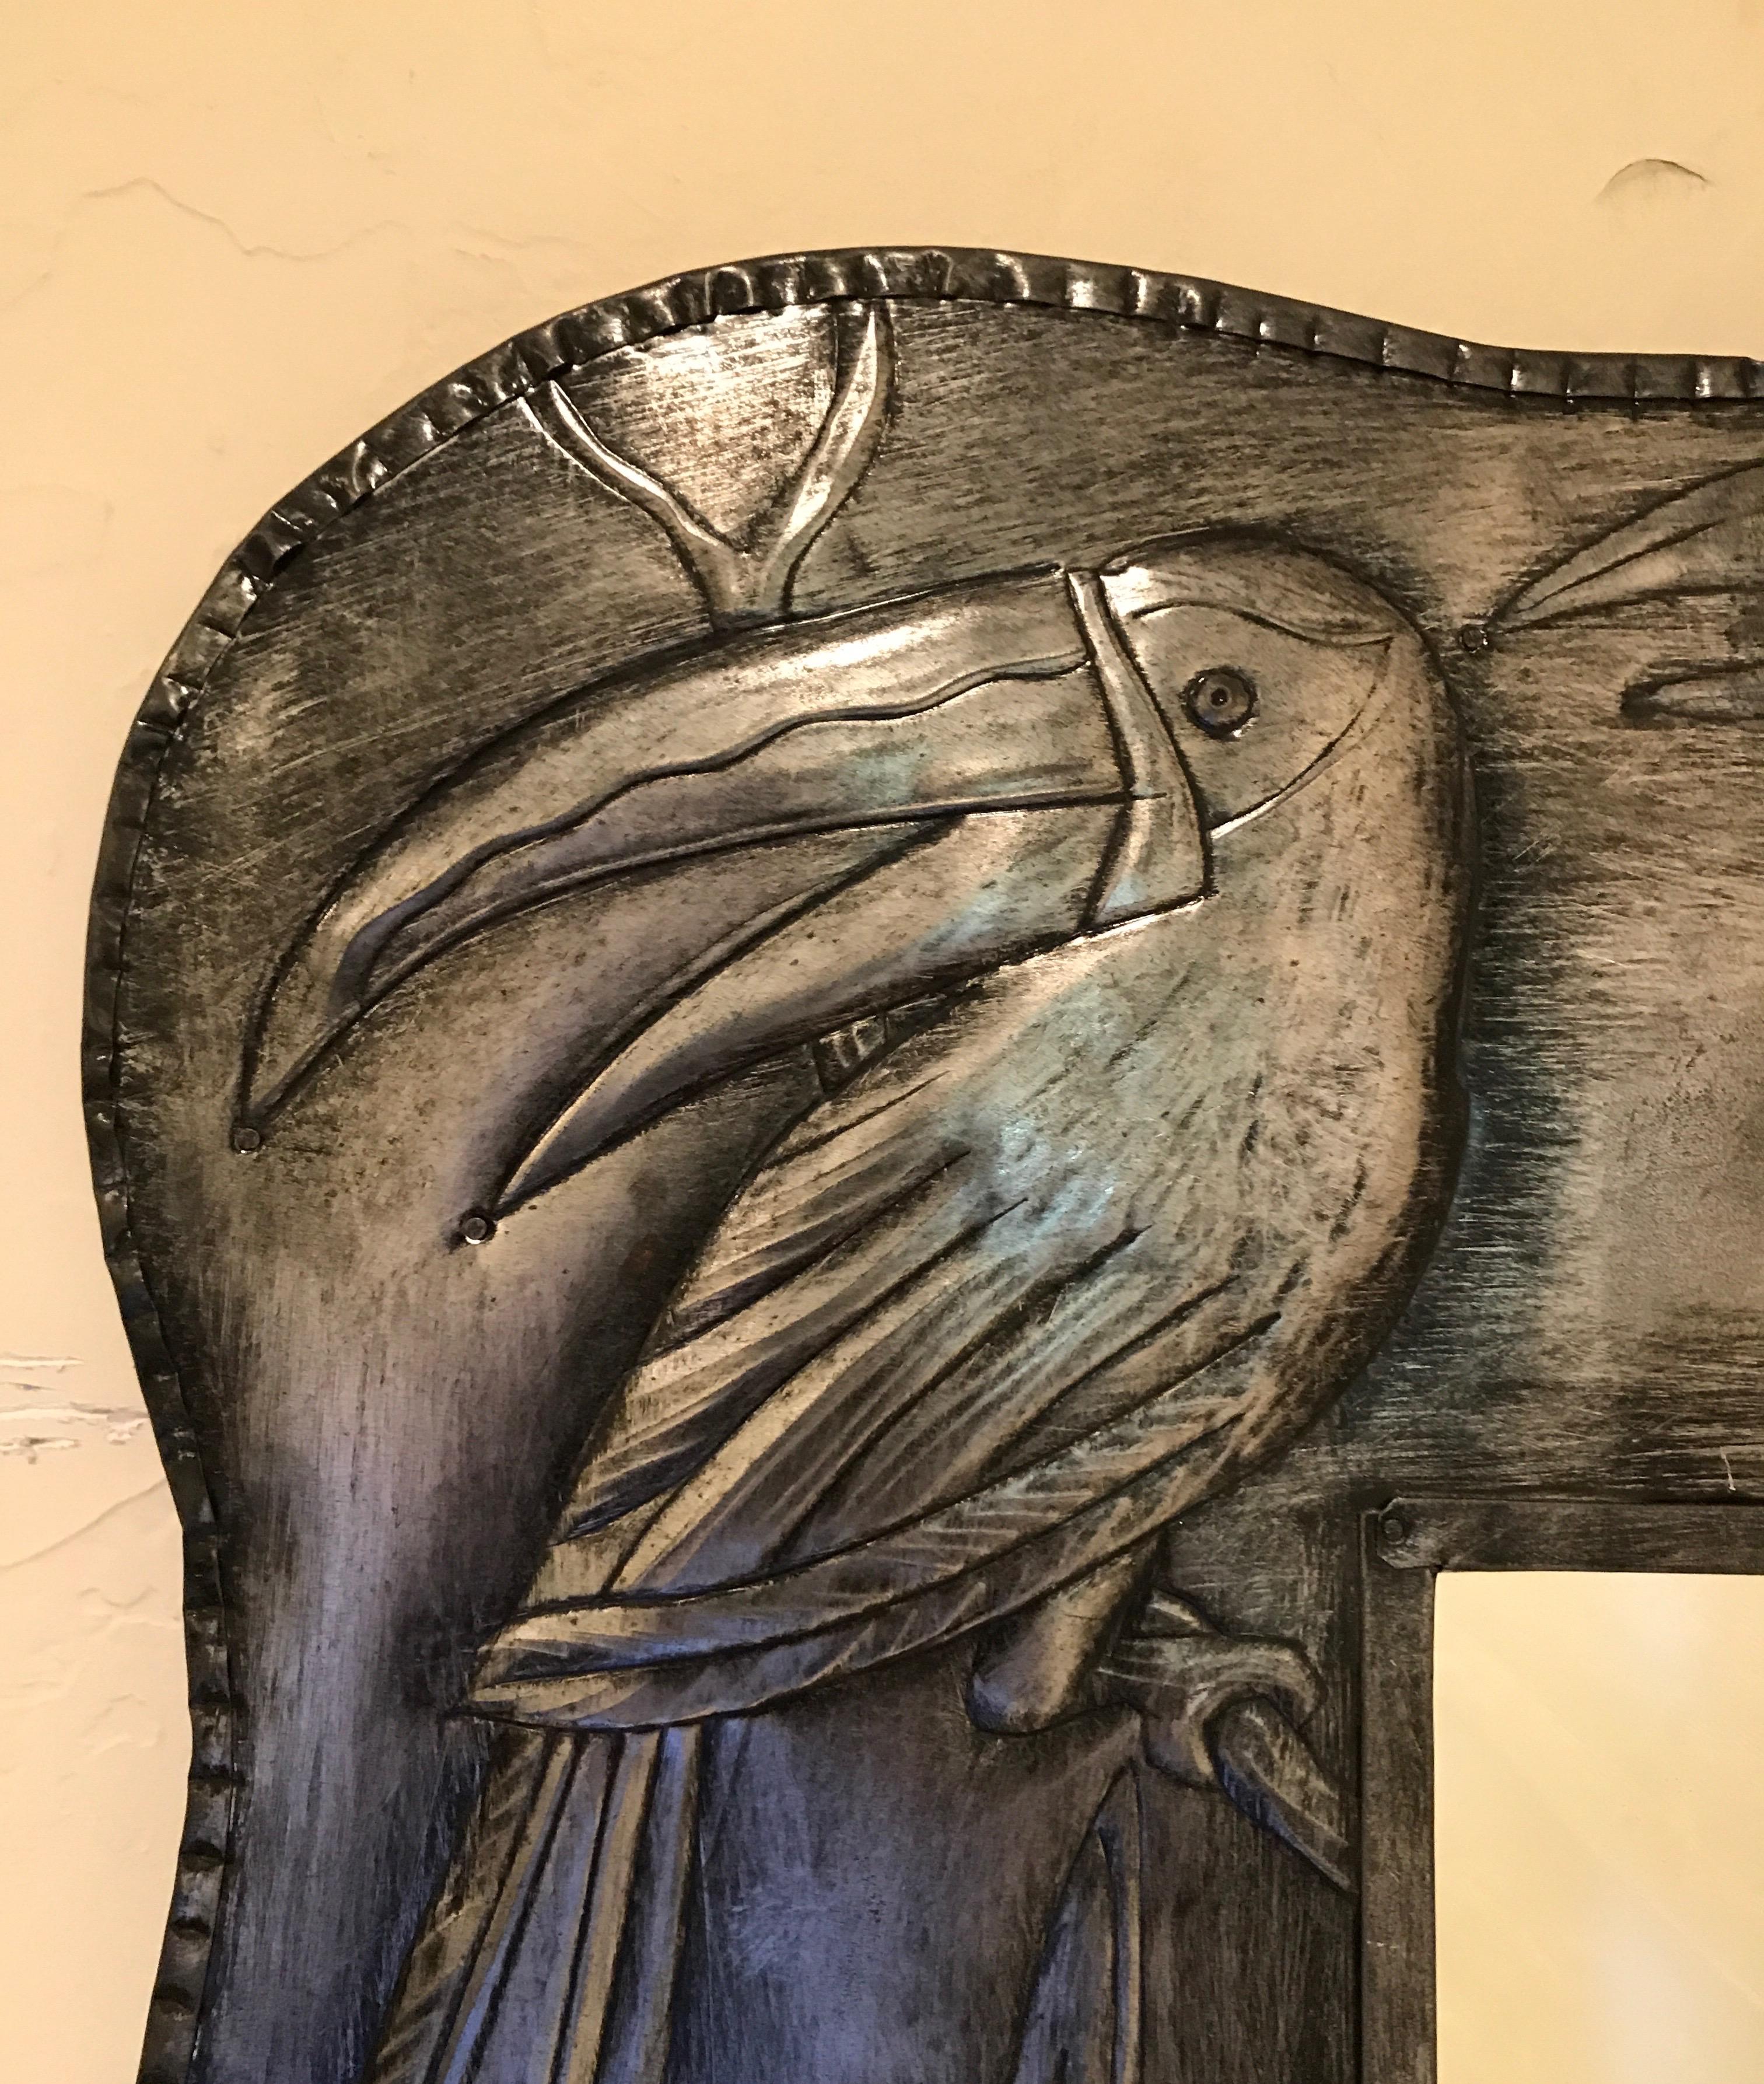 Miroir à cadre métallique avec motif toucan en relief.